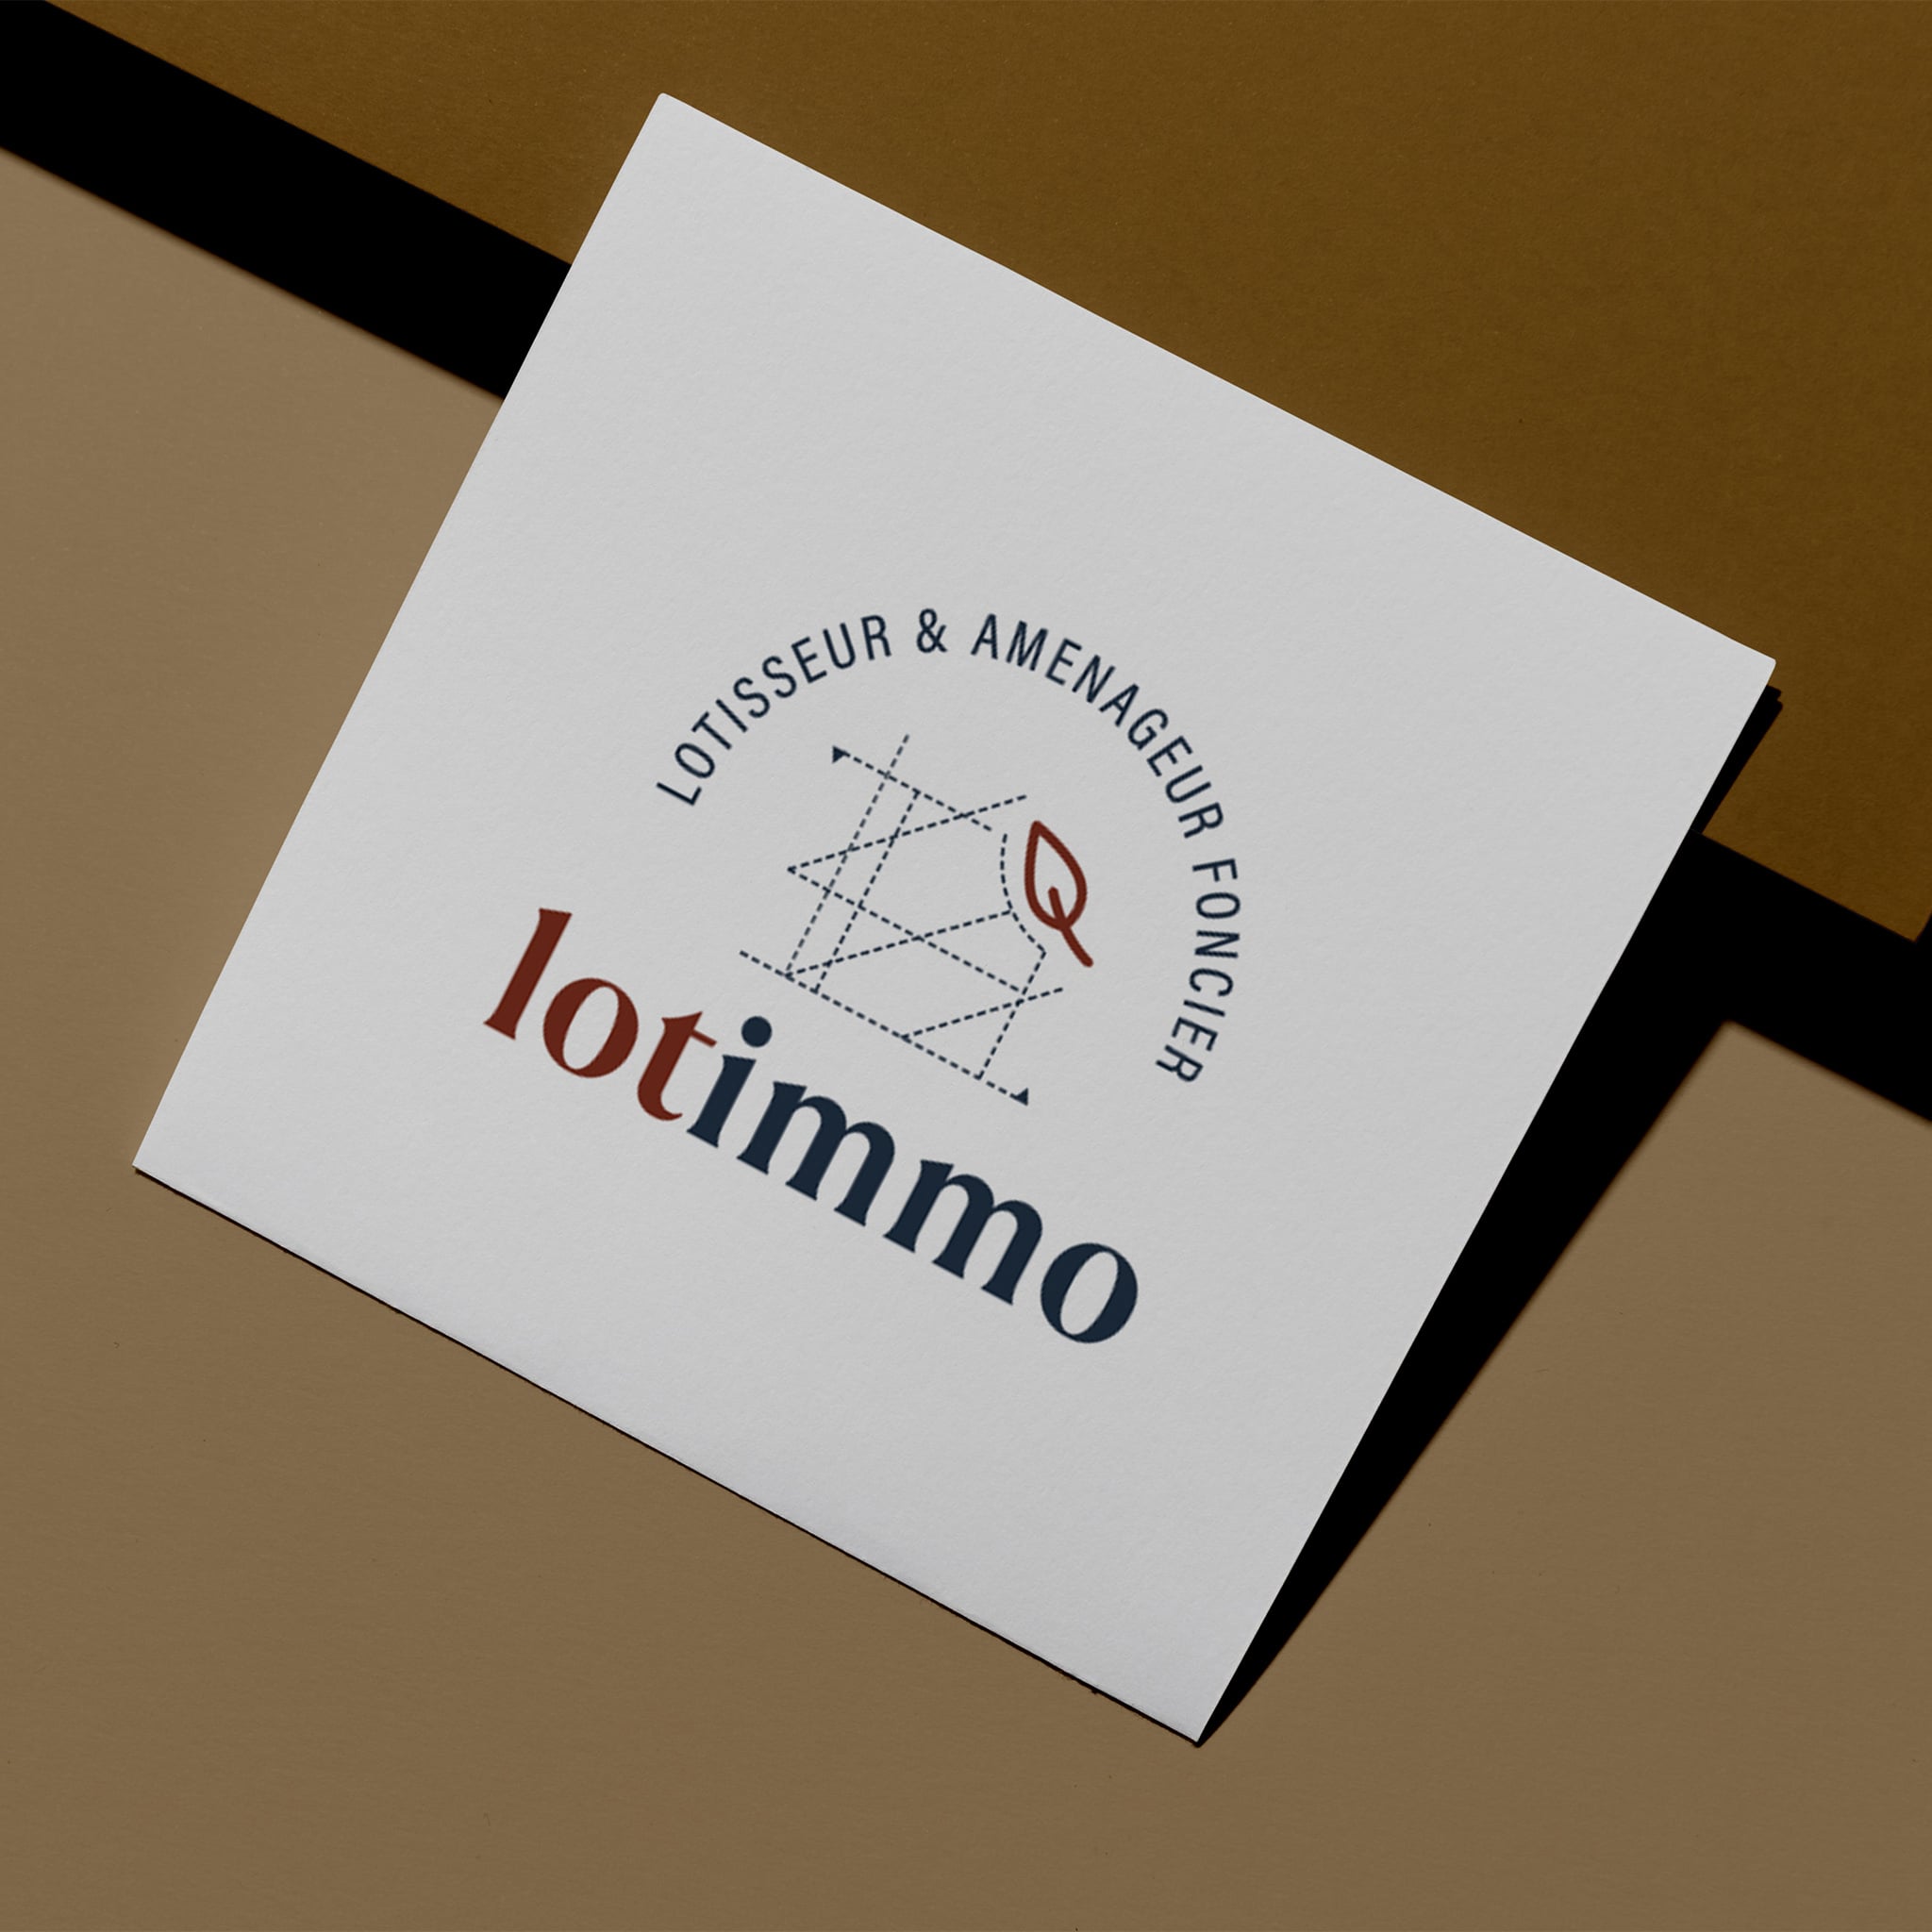 Création logotype lotimmo - lotisseur et aménageur foncier